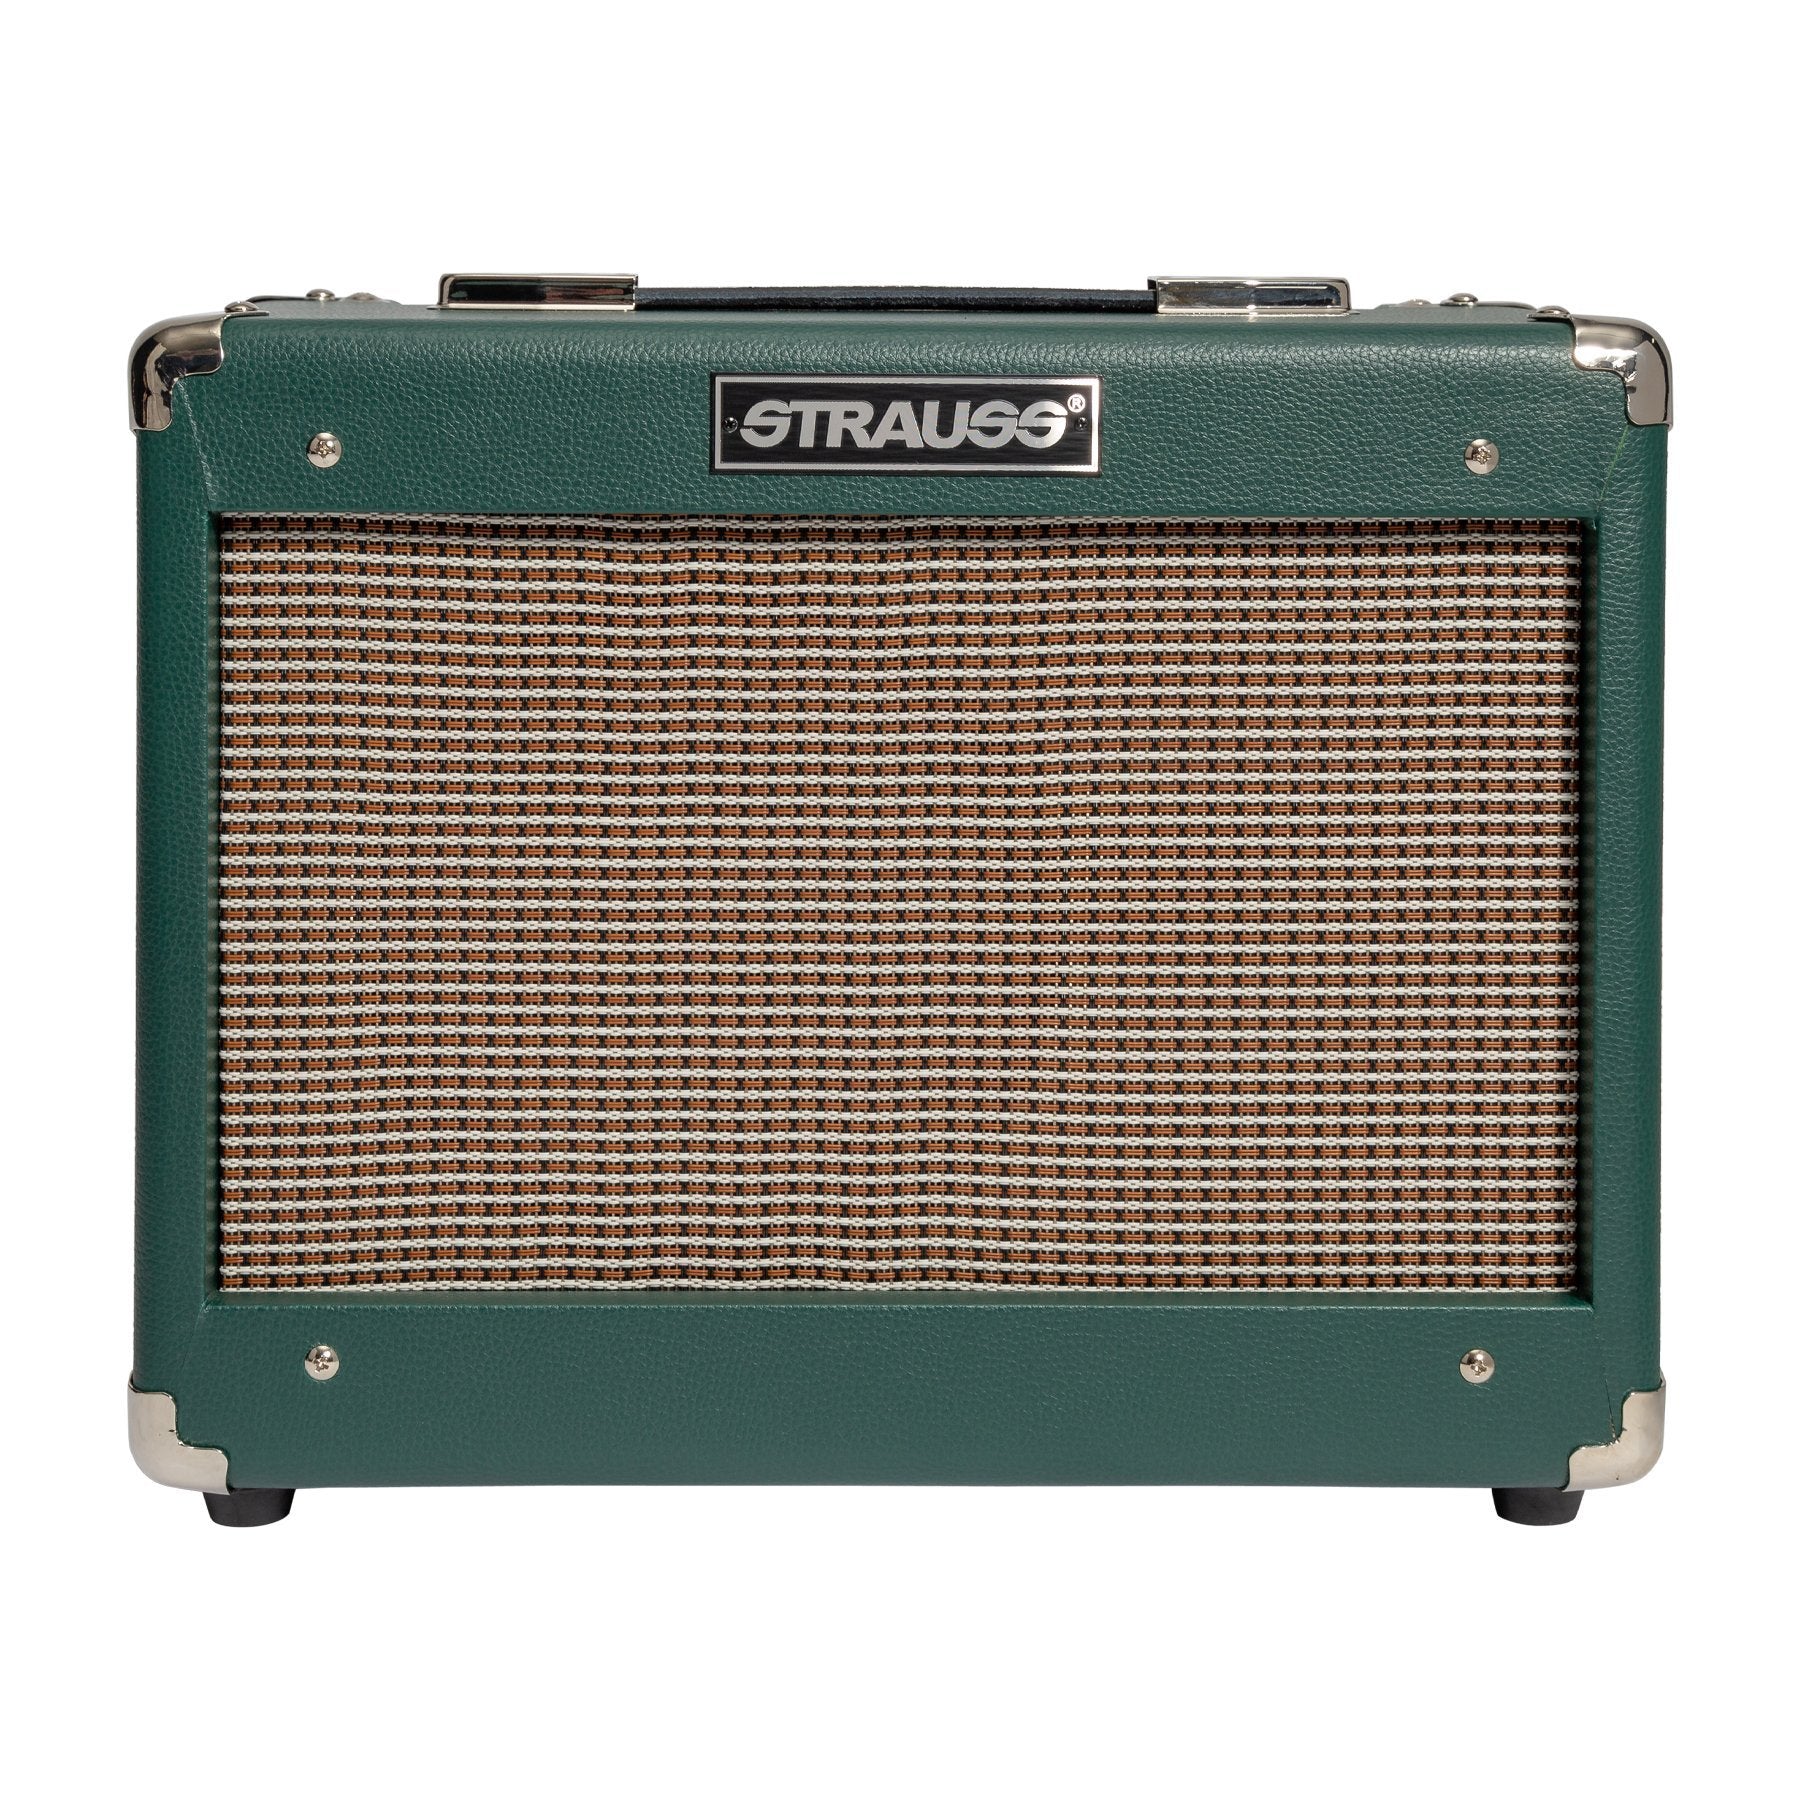 Strauss SVT-10 10 Watt Combo Valve Amplifier (Green)-SVT-10-GRN